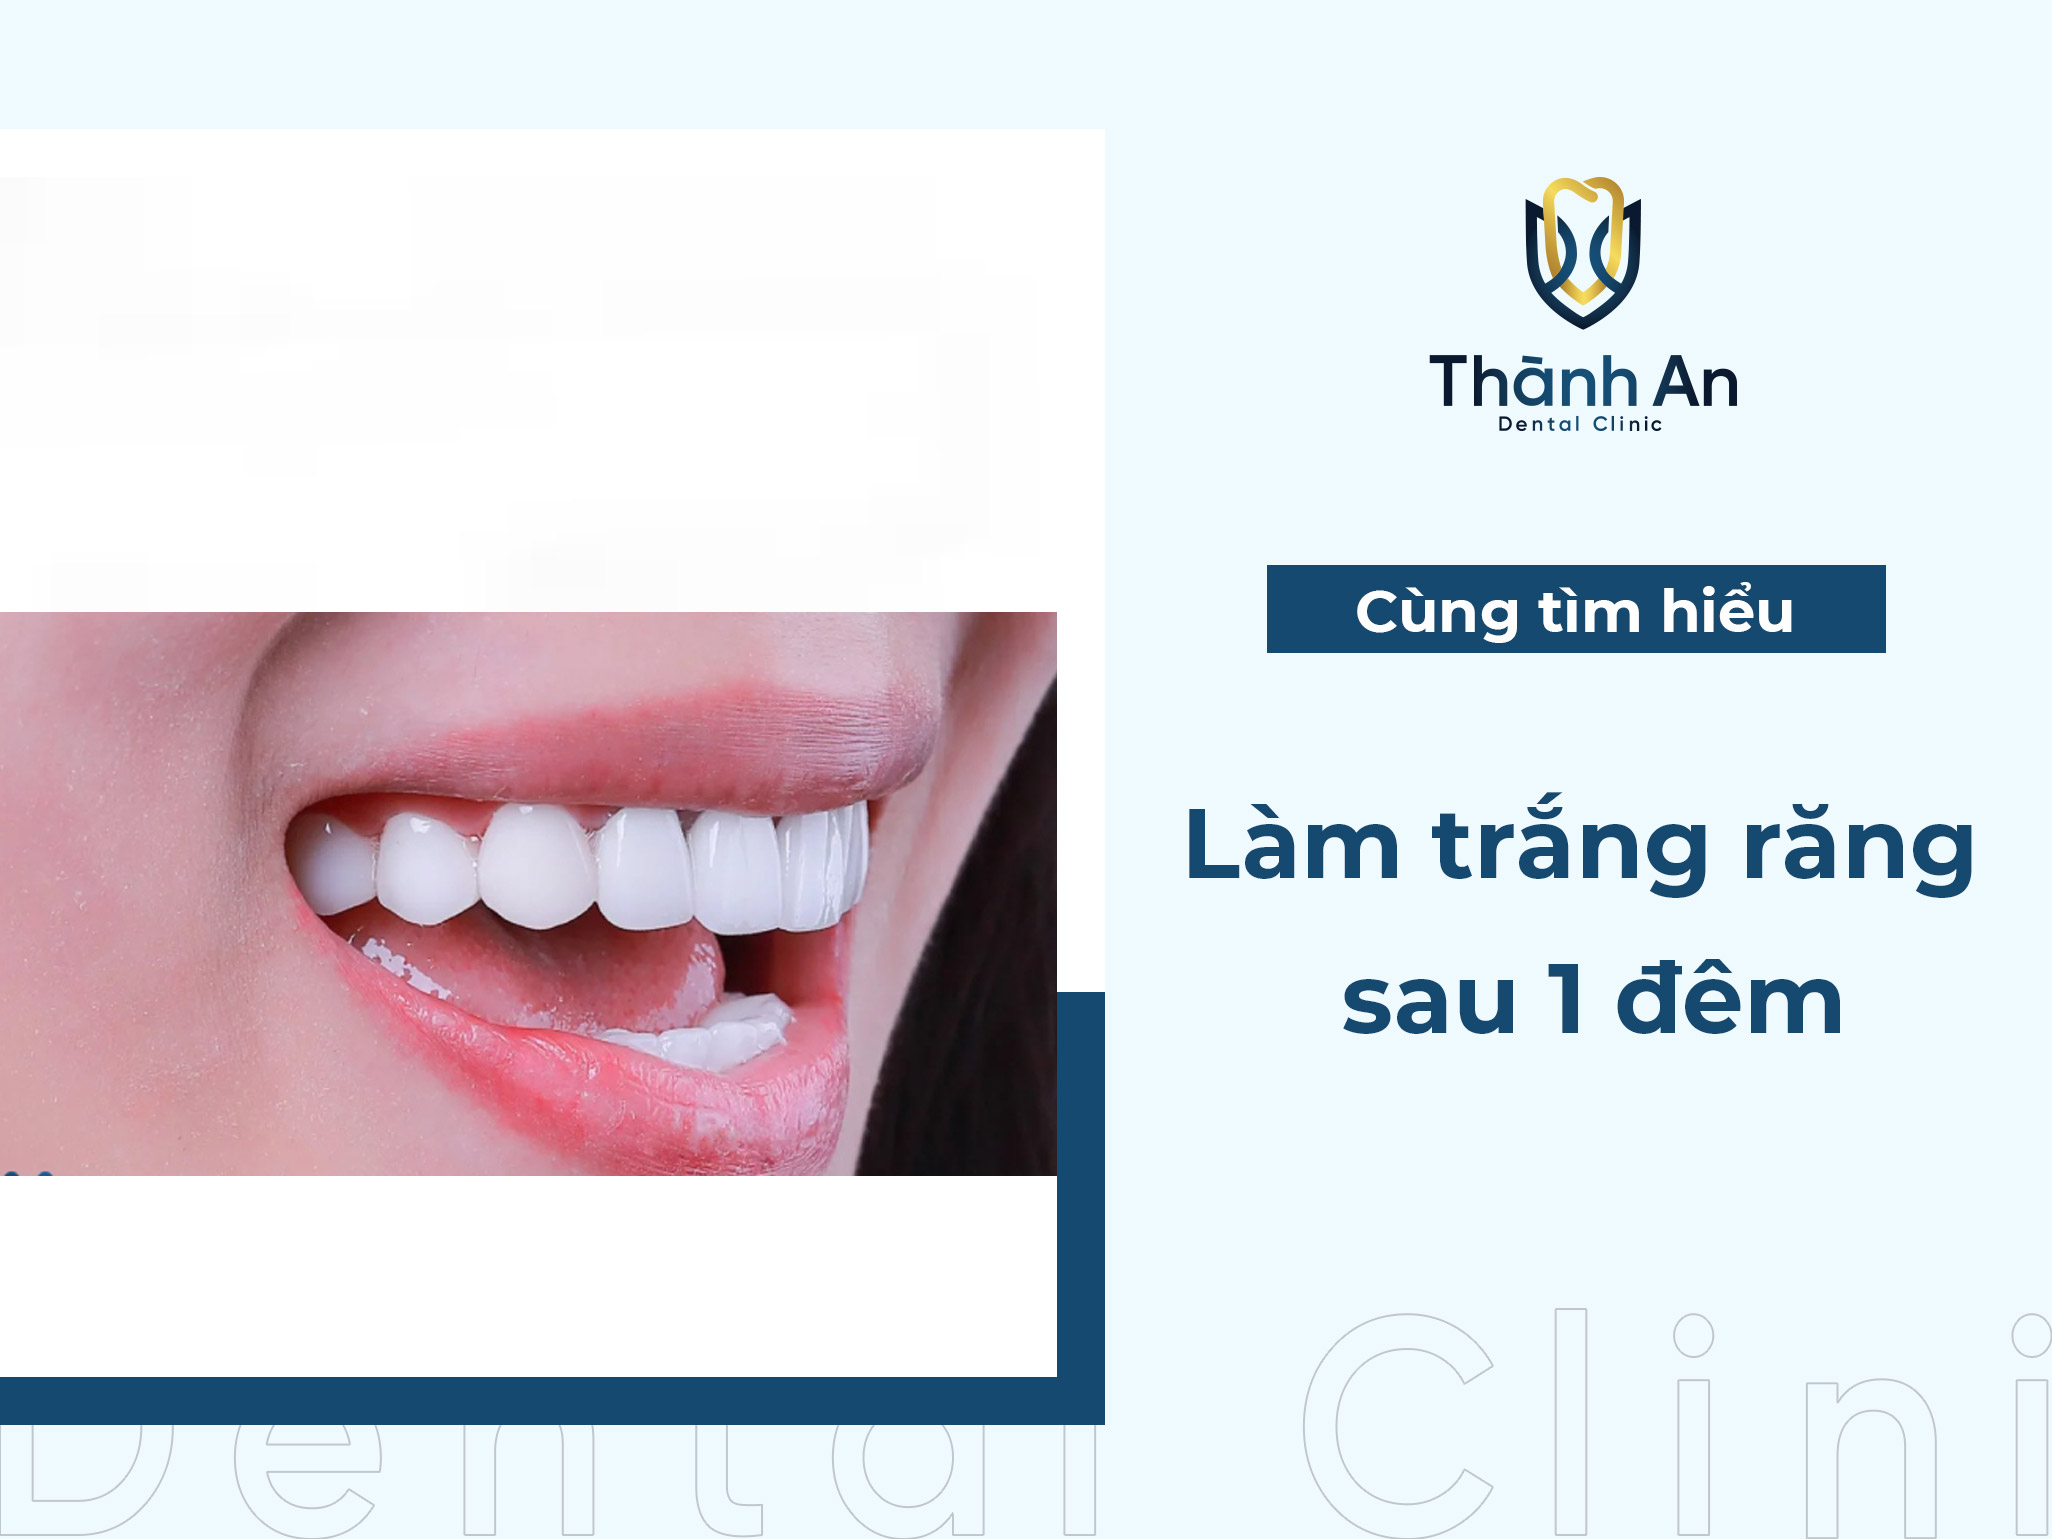 Mách bạn cách làm trắng răng sau 1 đêm từ bác sĩ nha khoa